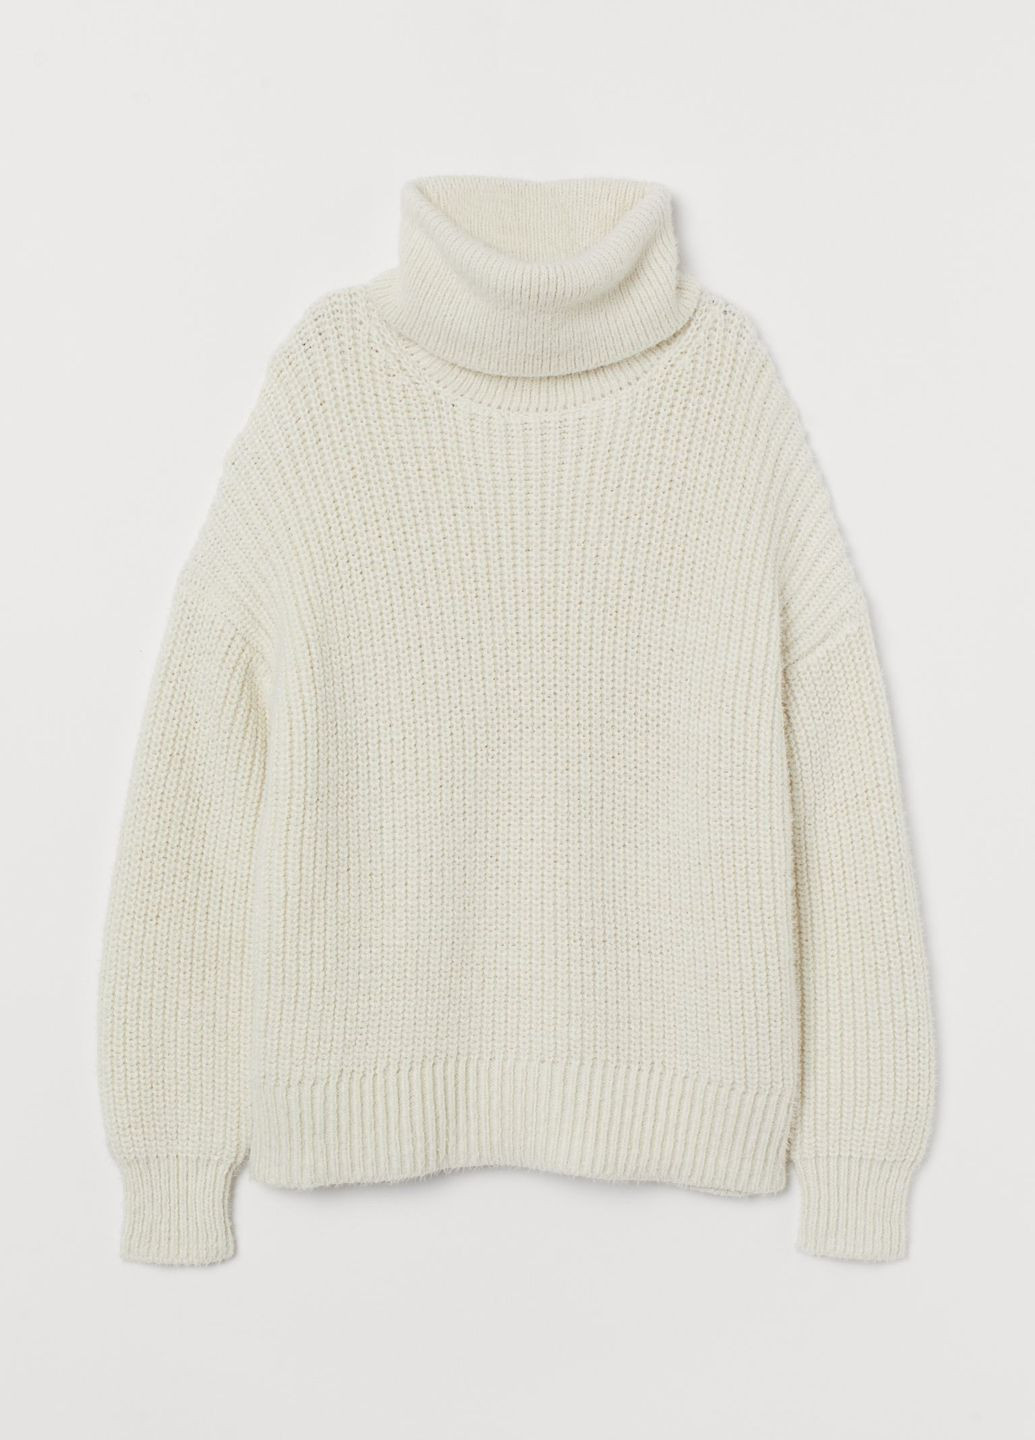 Белый зимний свитер с высоким воротом белый повседневный зима пуловер H&M